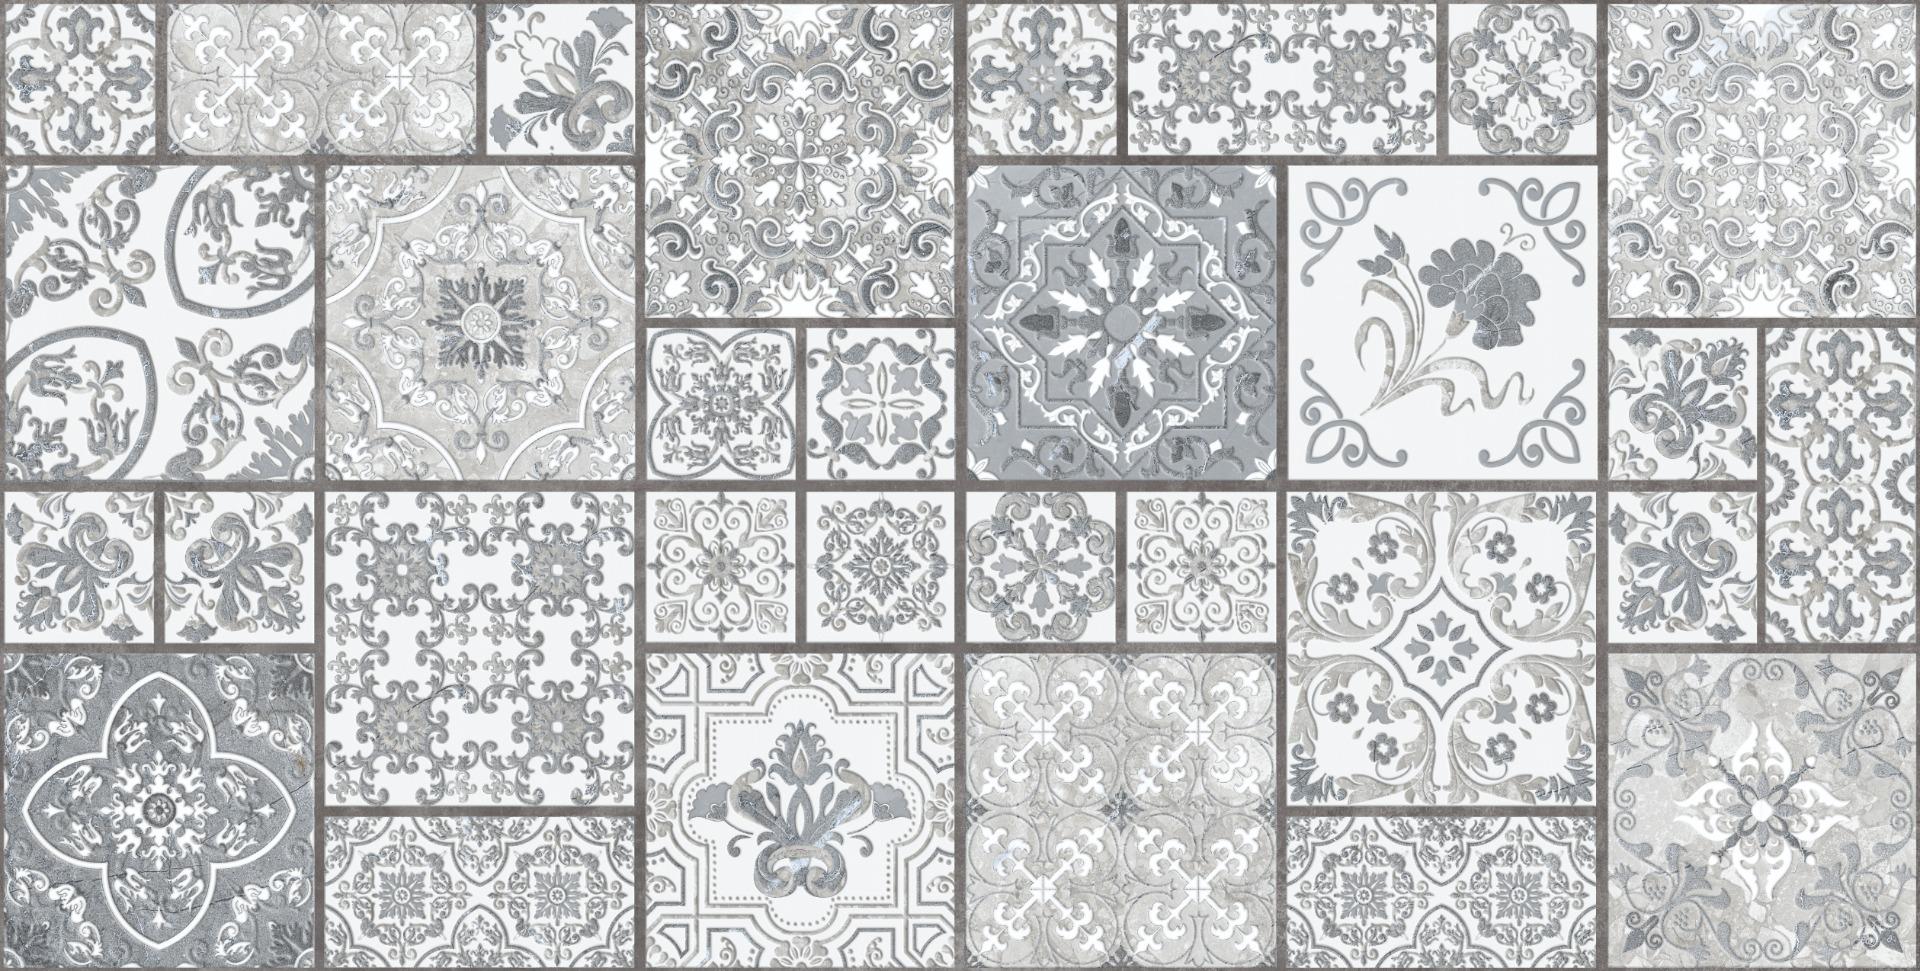 White Tiles for Bathroom Tiles, Living Room Tiles, Kitchen Tiles, Bedroom Tiles, Accent Tiles, Automotive Tiles, Bar/Restaurant, Commercial/Office